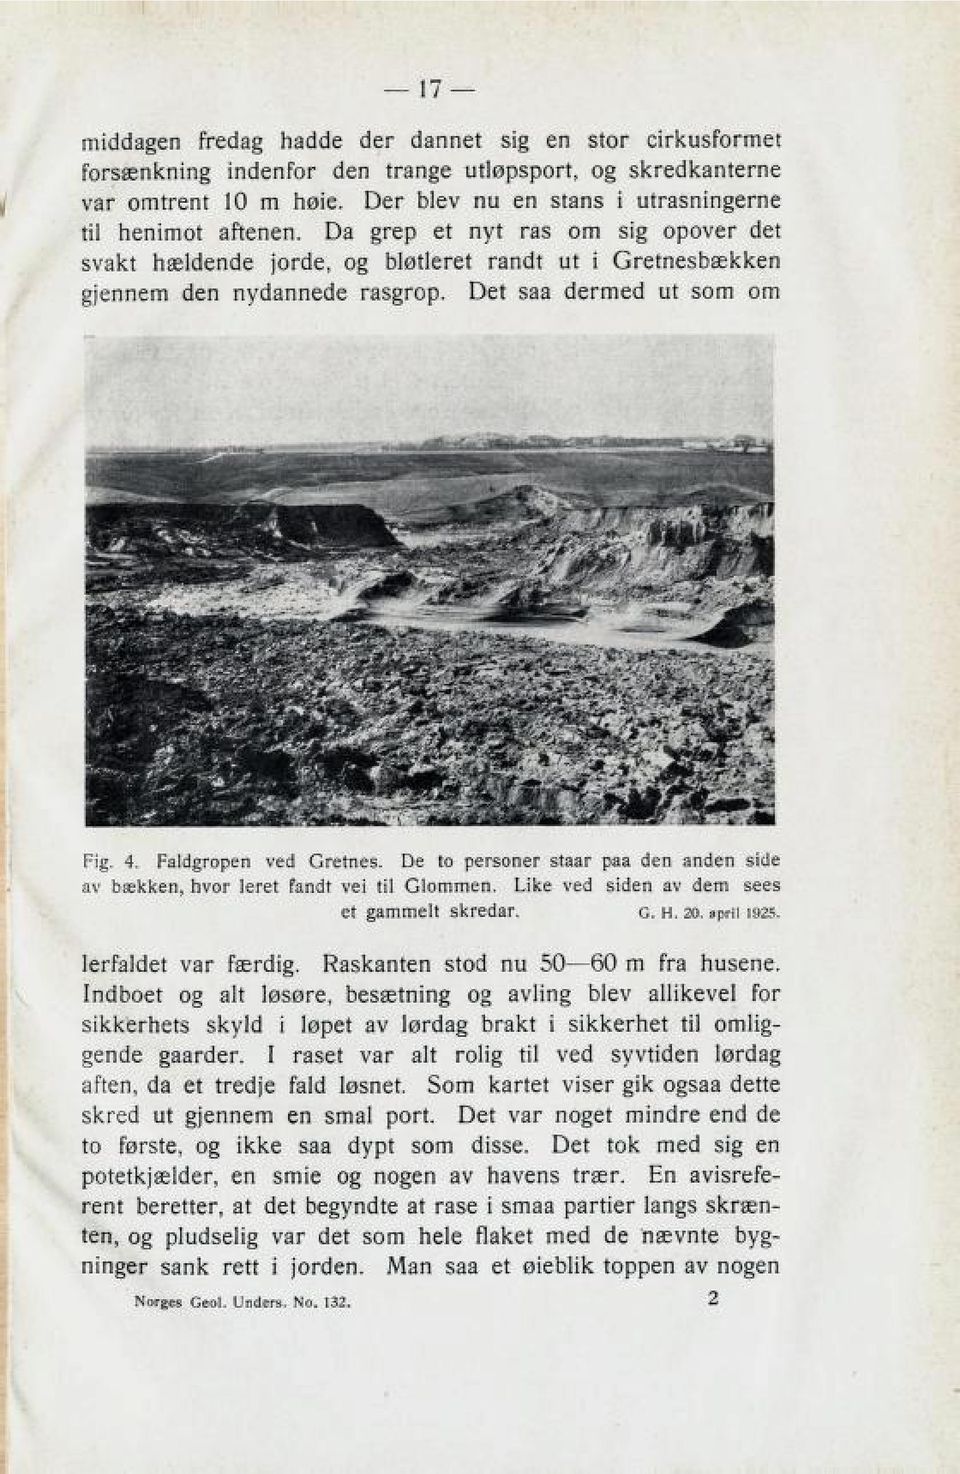 De to personer Ltaar paa den anden side av bækken, hvor leret fandt vei til Glommen. Like ved siden av dem sees et gammelt skredar. g. h. 20. april 1925. lerfaldet var færdig.